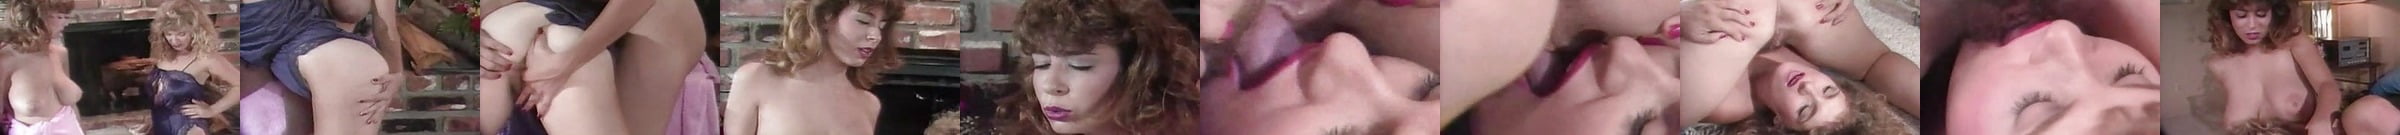 Danni Ashe And Lorna Morgan 2 Free Danni Ashe Lesbian Porn Video